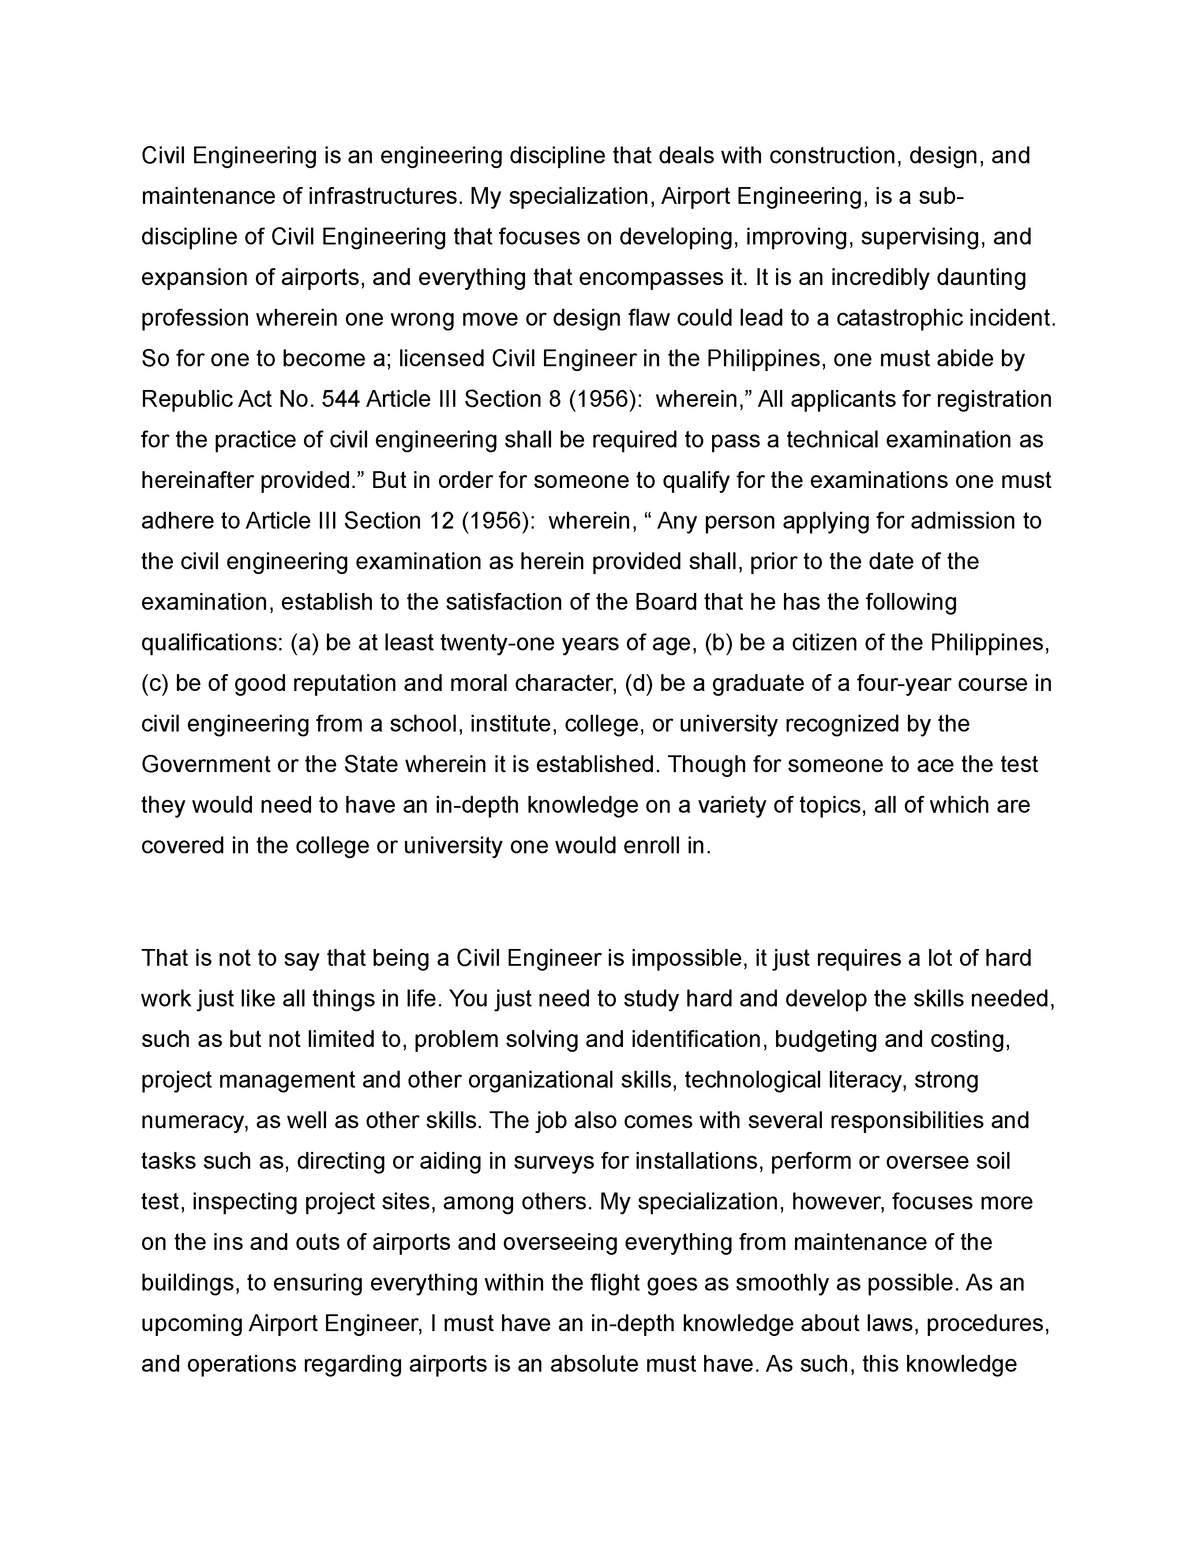 civil engineering essay pdf